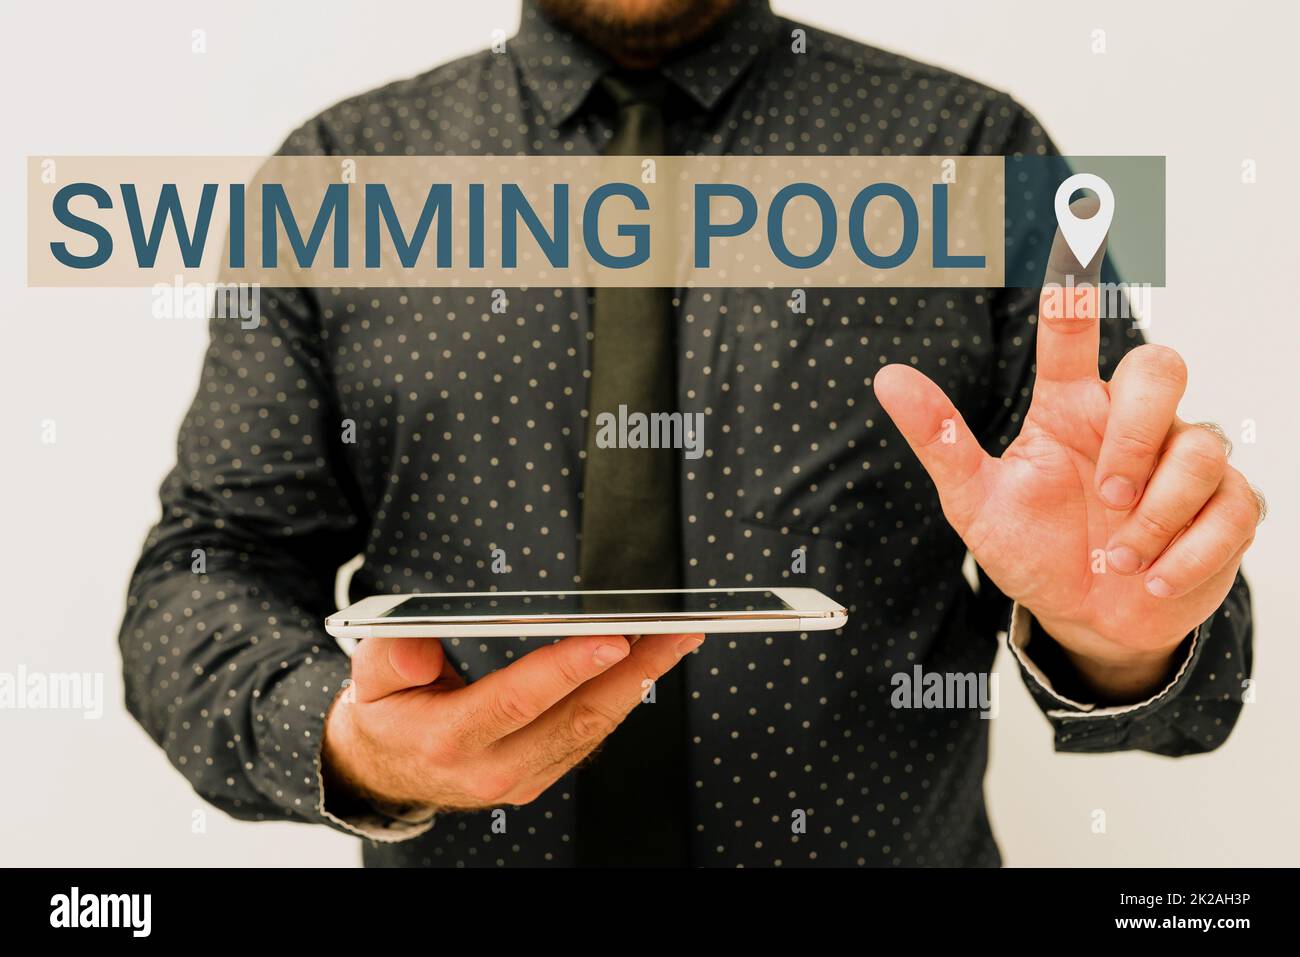 Handgeschriebener Text Swimming Pool. Business-Ansatz-Struktur, die Wasser für Freizeitaktivitäten hält und Ideen für neue Technologien präsentiert, die technologische Verbesserungen erörtern Stockfoto